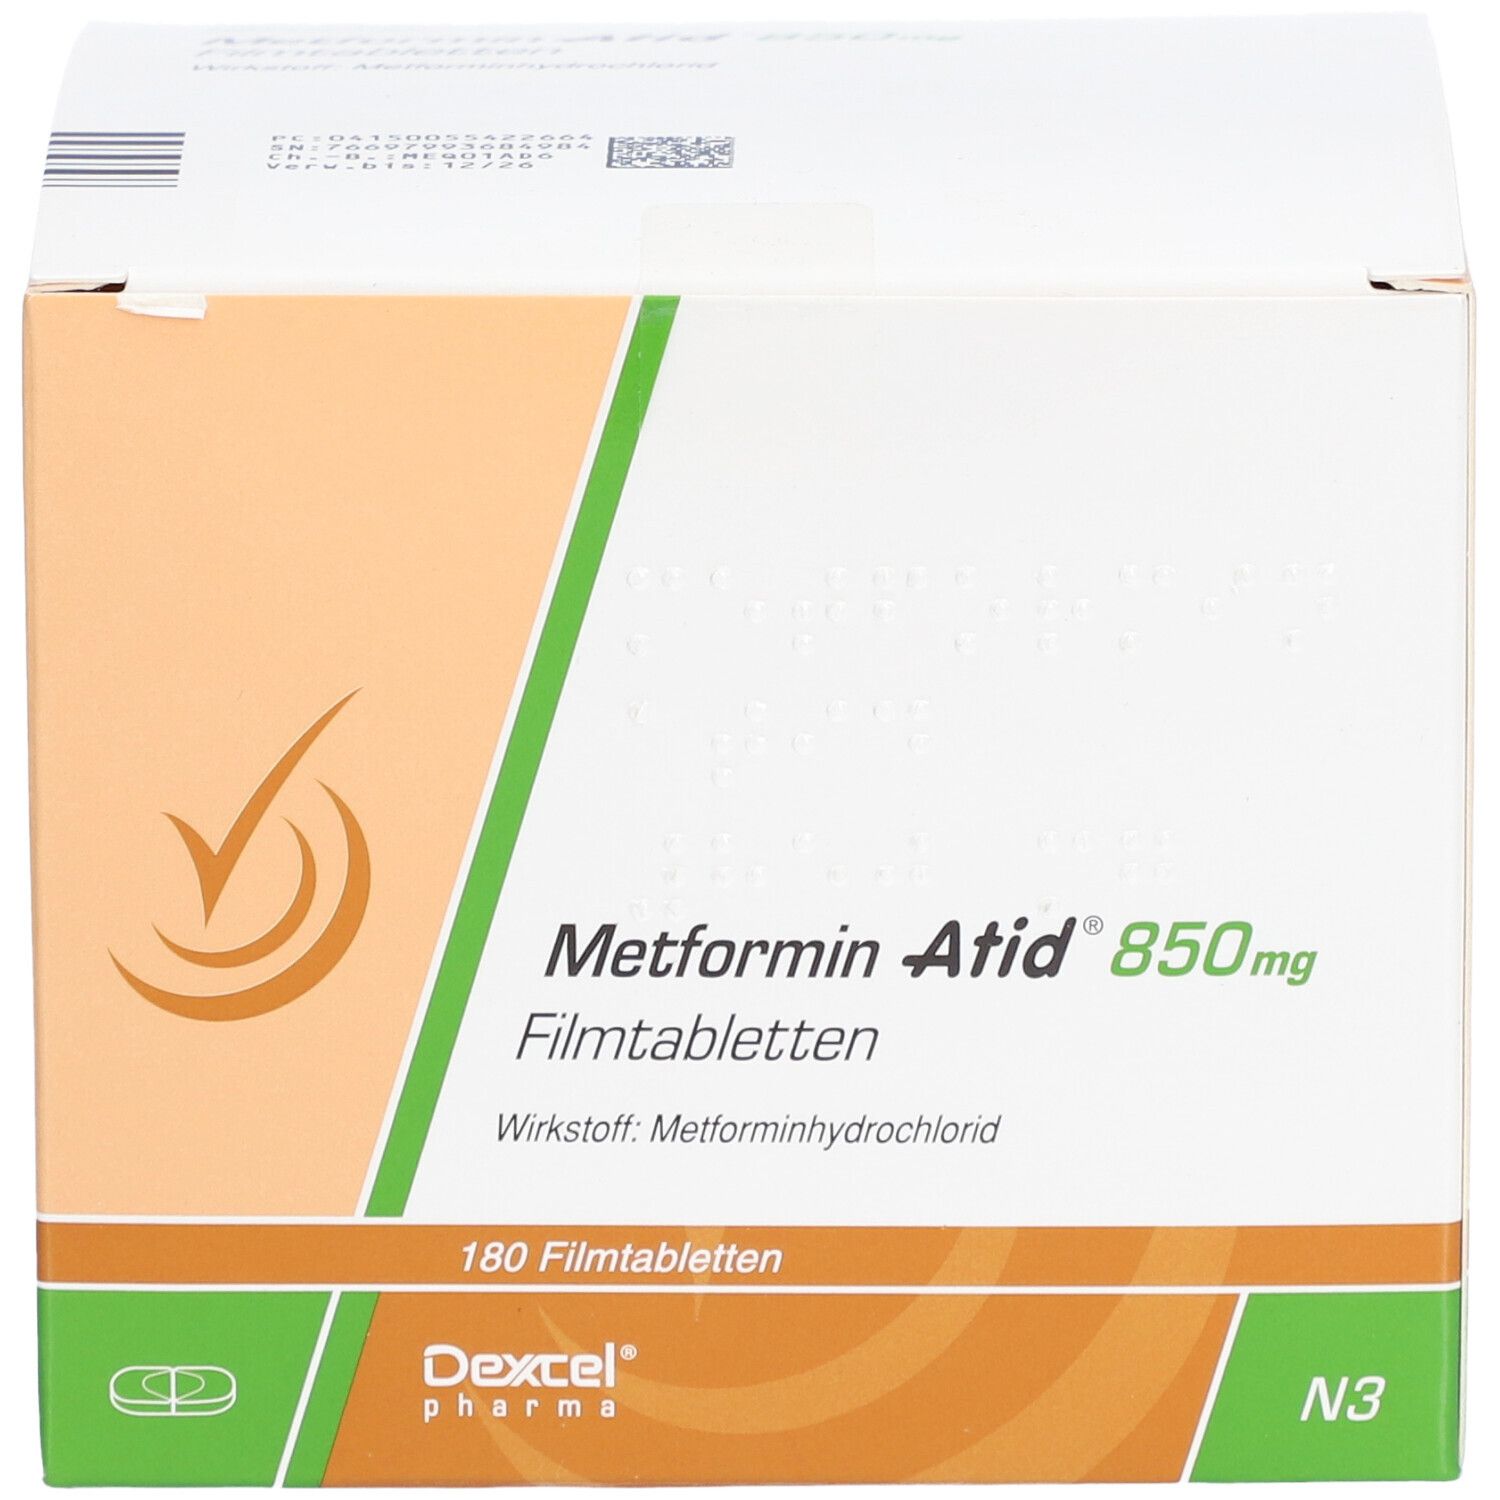 Metformin Atid® 850 mg